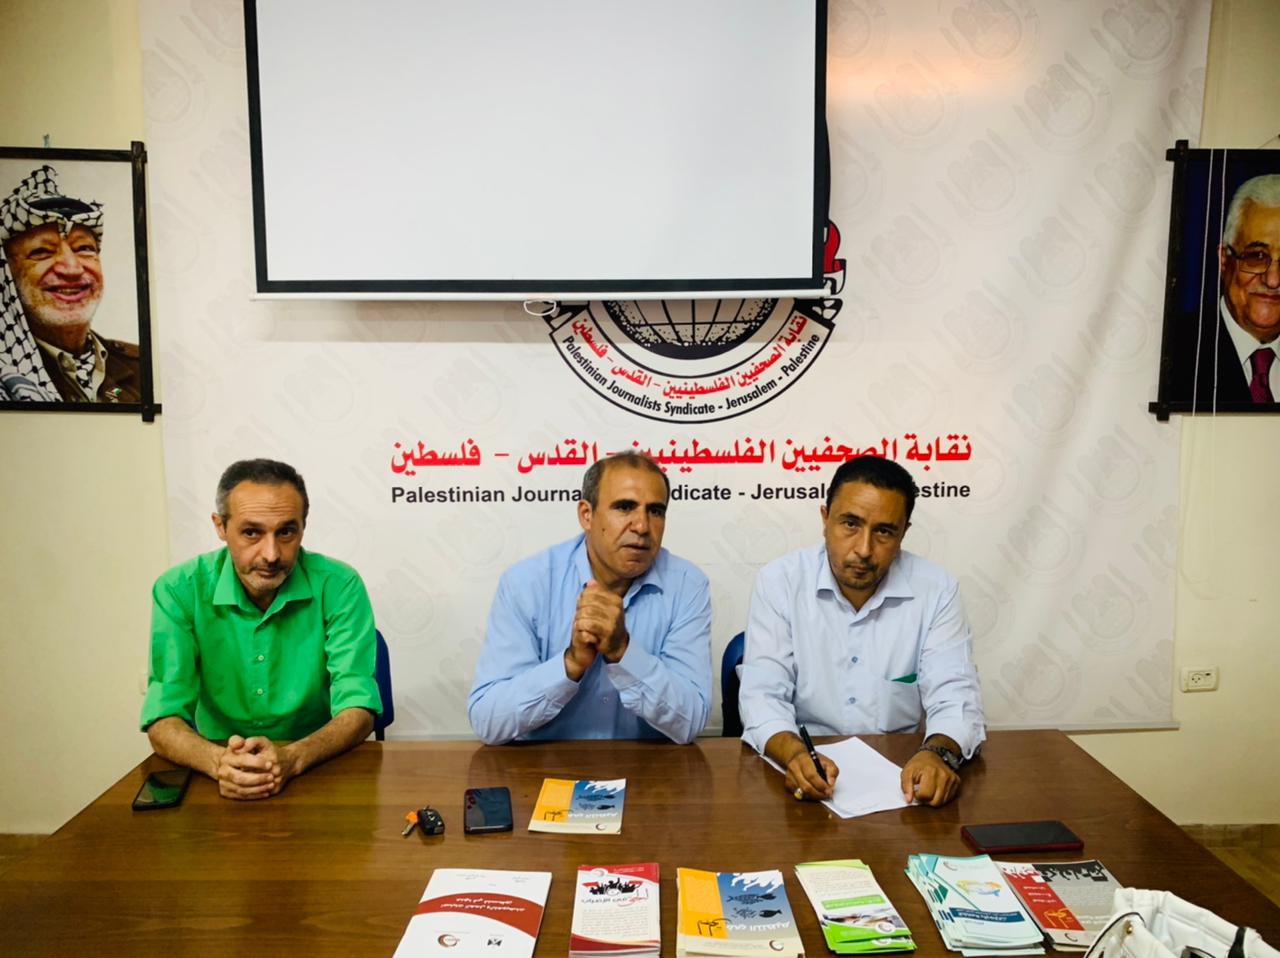 نقابة الصحفيين بغزة ومركز الديمقراطية وحقوق العالمين ينظمان لقاء حول الحقوق الأساسية